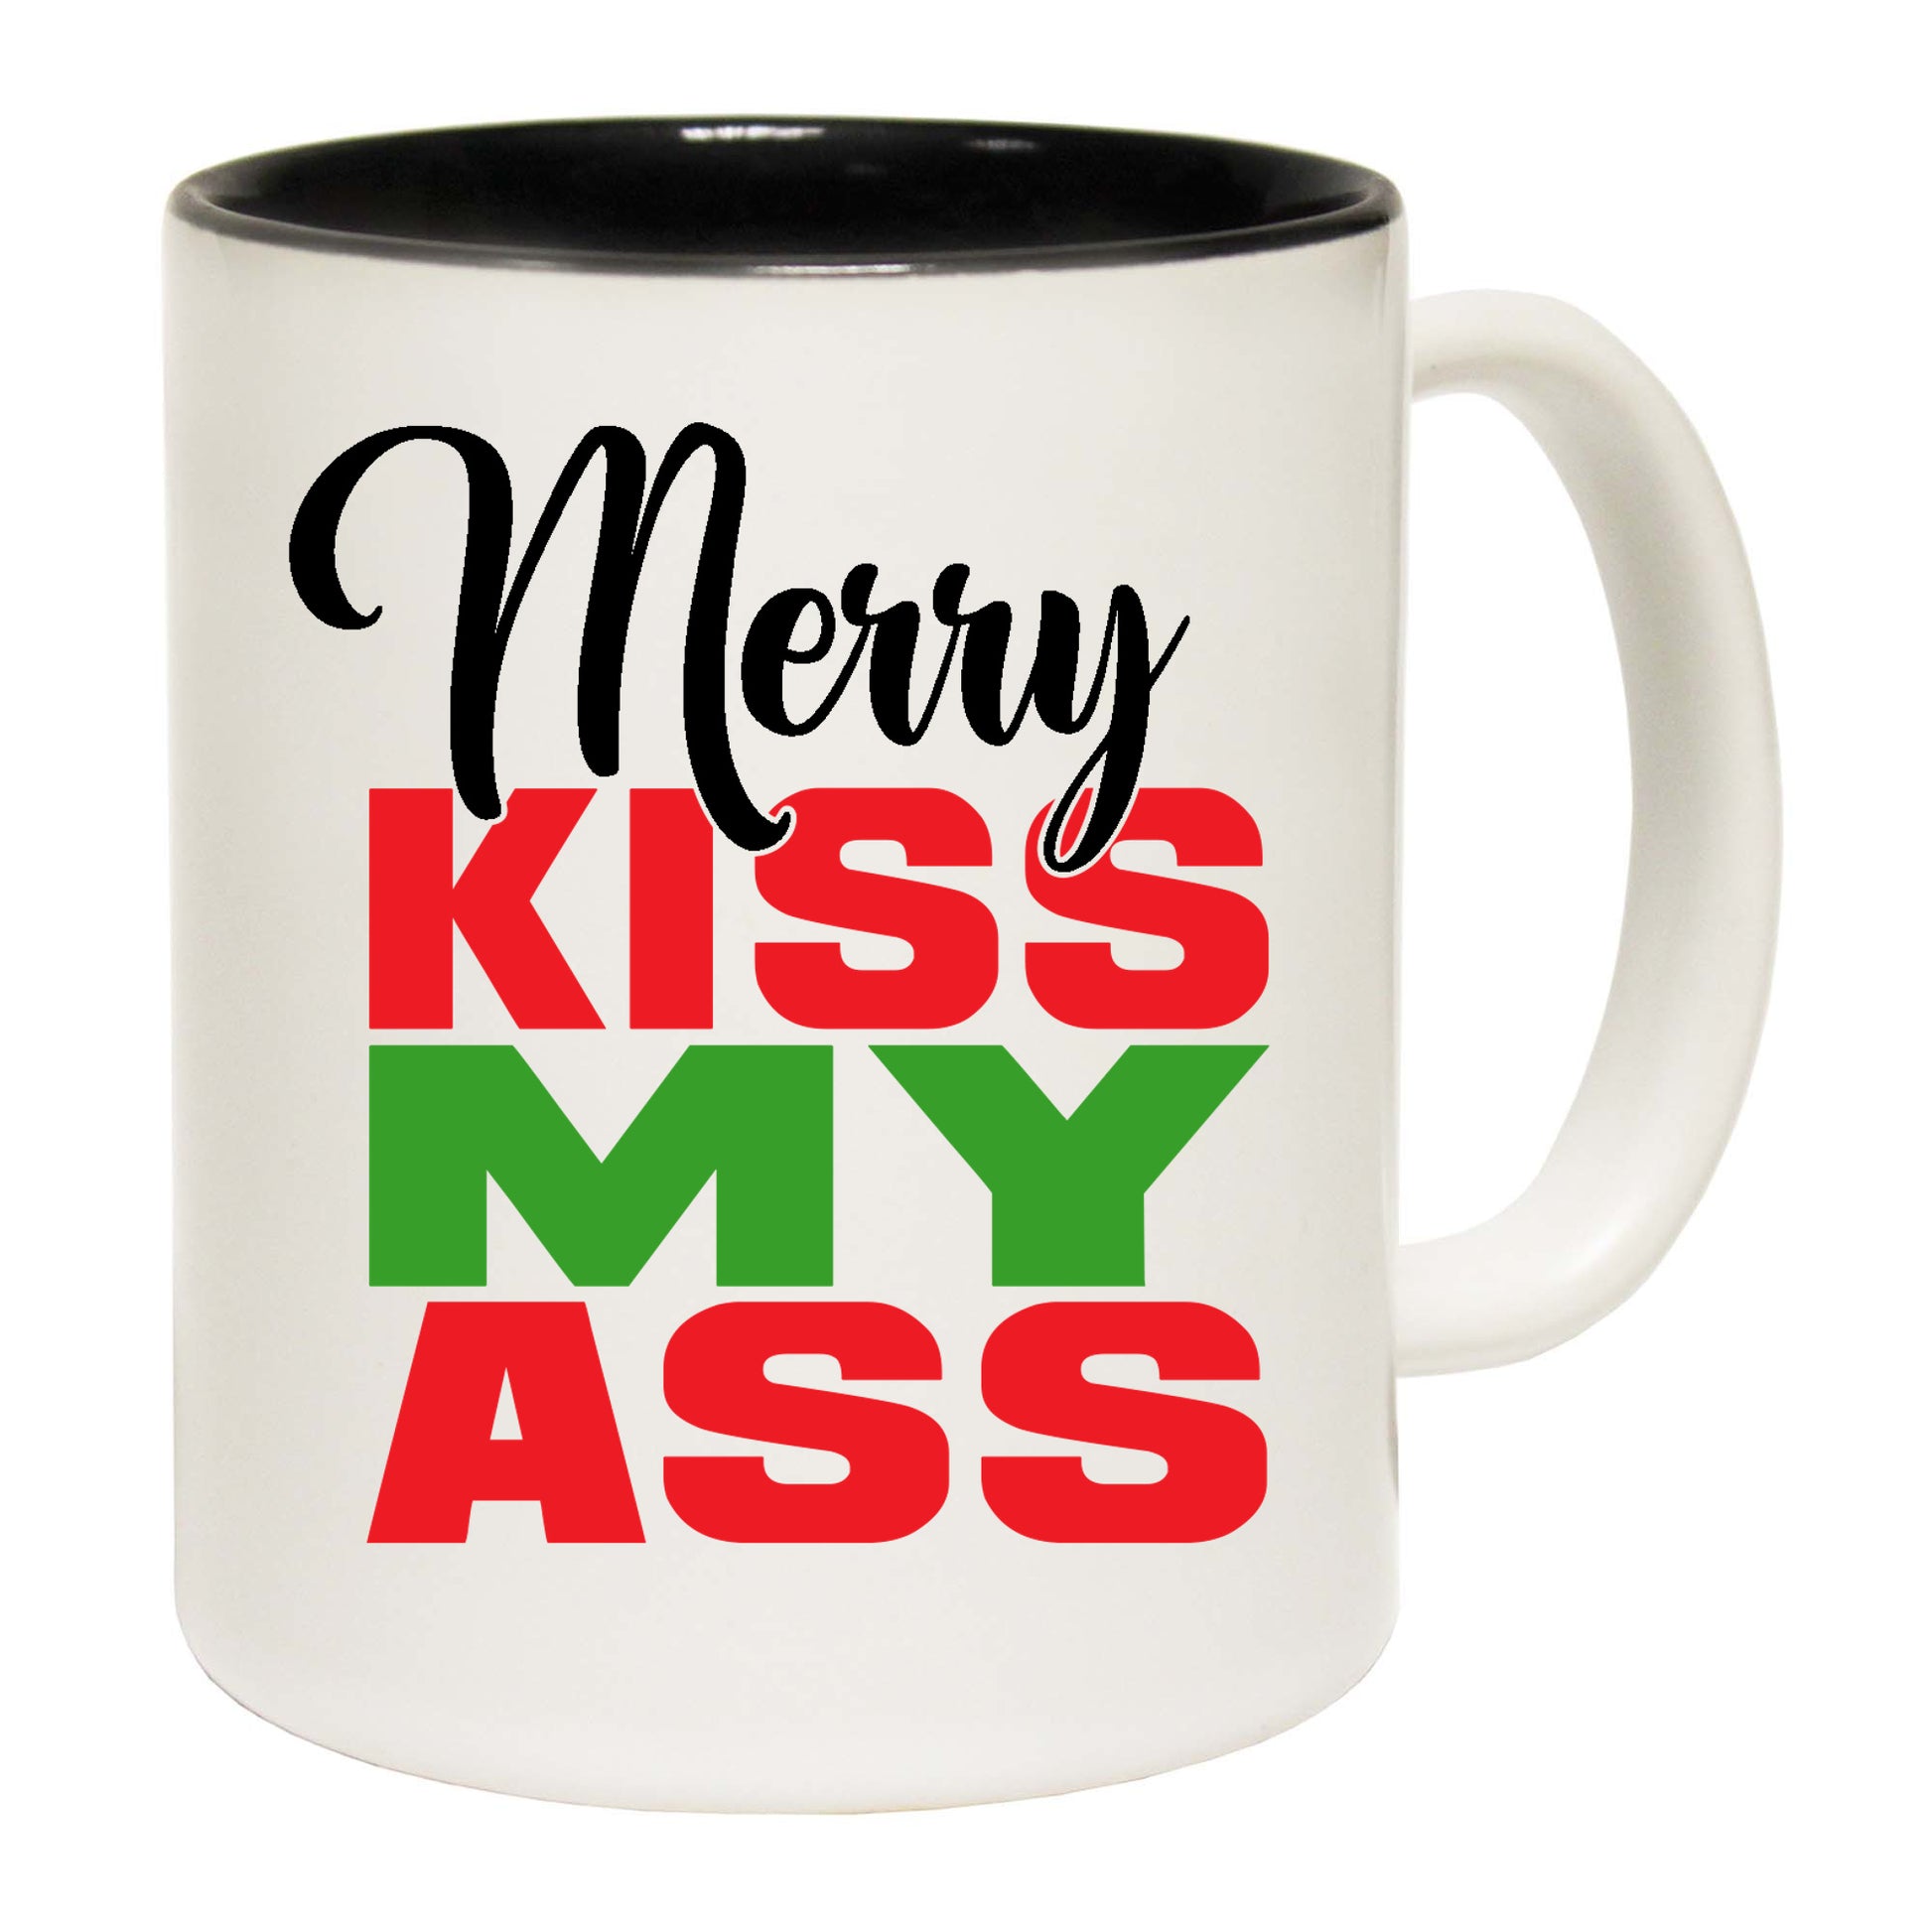 The Christmas Hub - Christmas Xmas Merry Kiss My Ass - Funny Coffee Mug